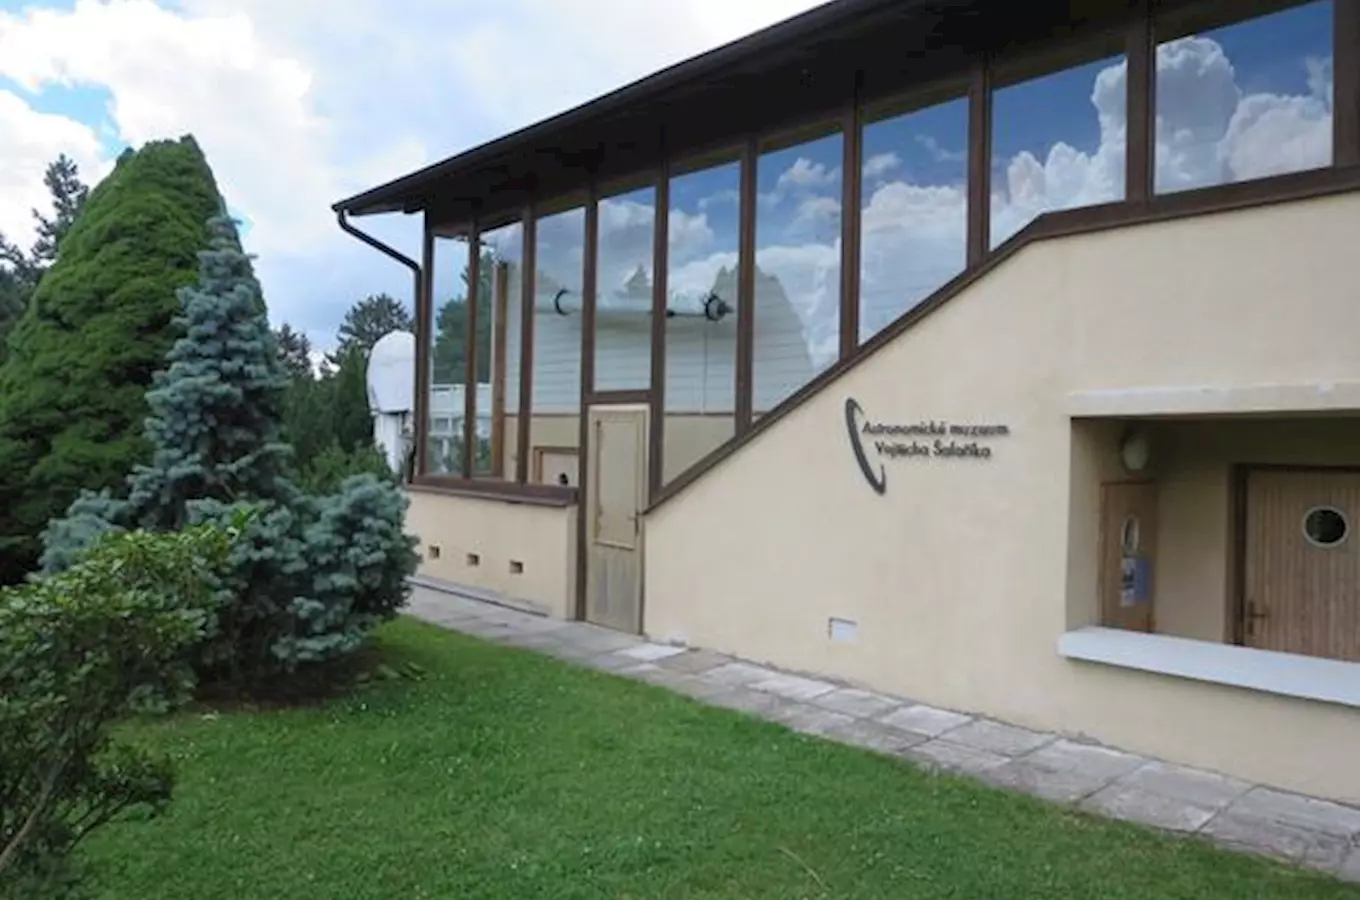 Astronomické muzeum Vojtěcha Šafaříka v Ondřejově